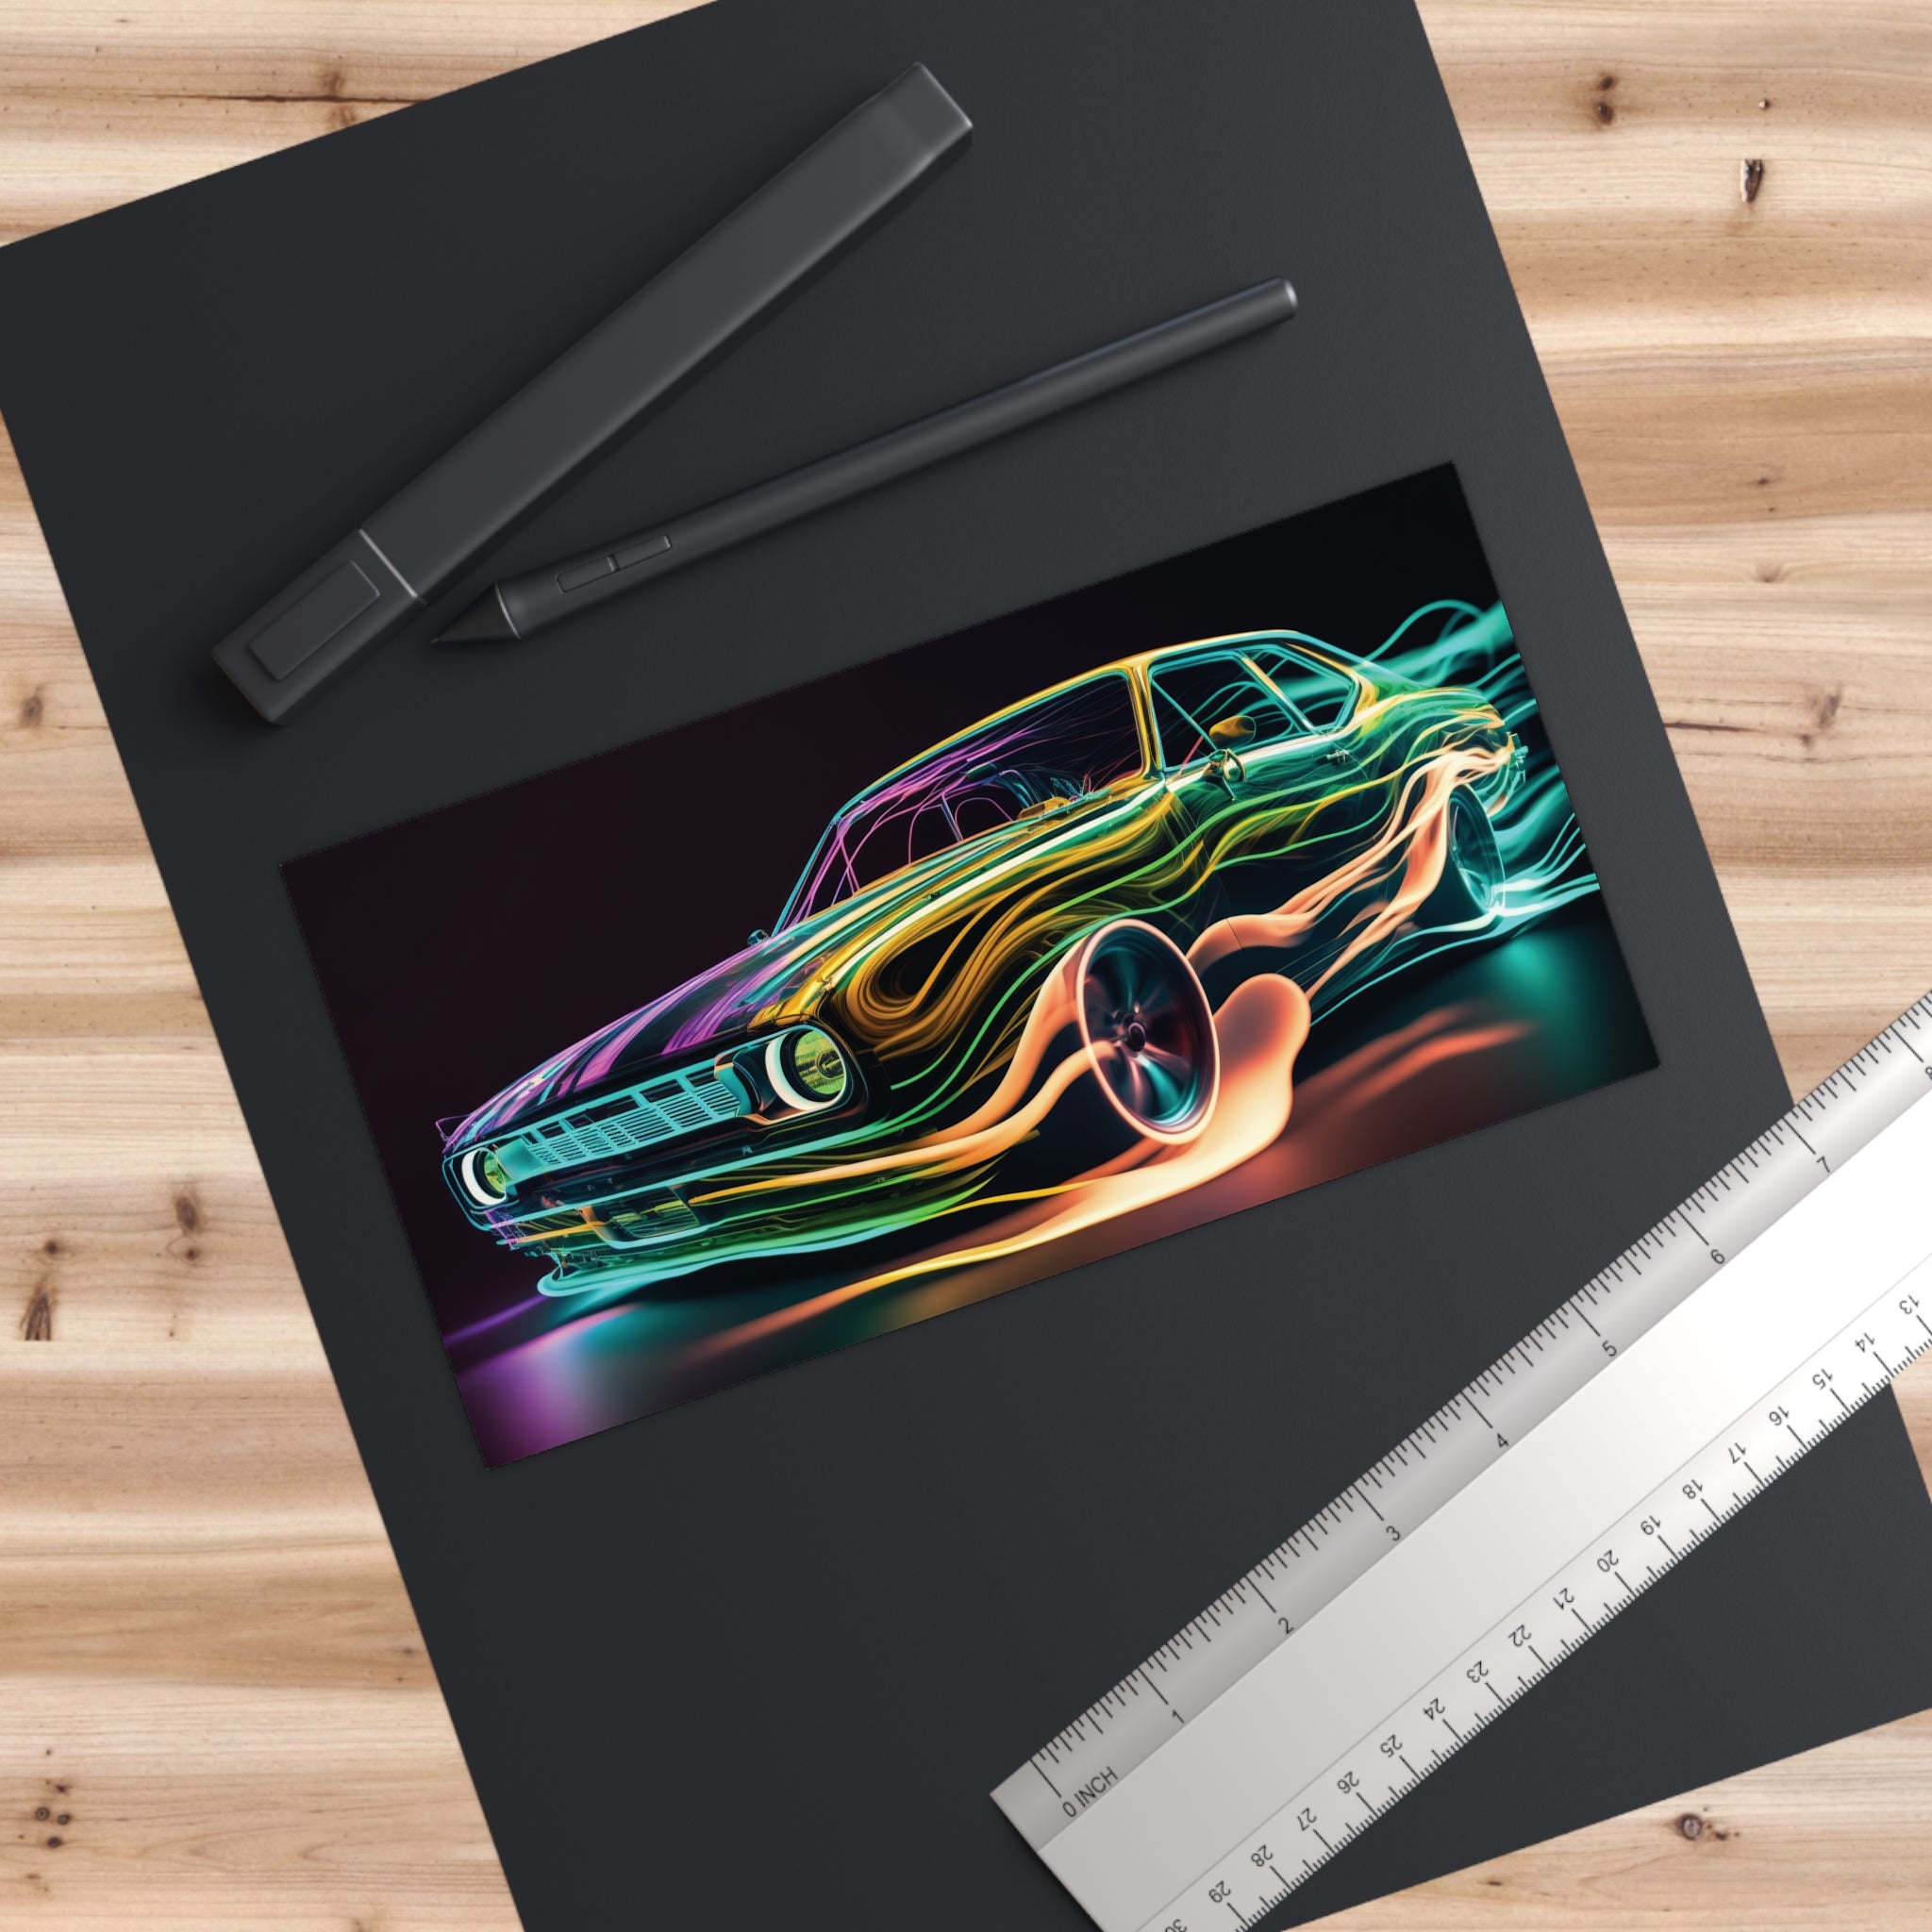 Bumper Stickers - Neon Car Design 03